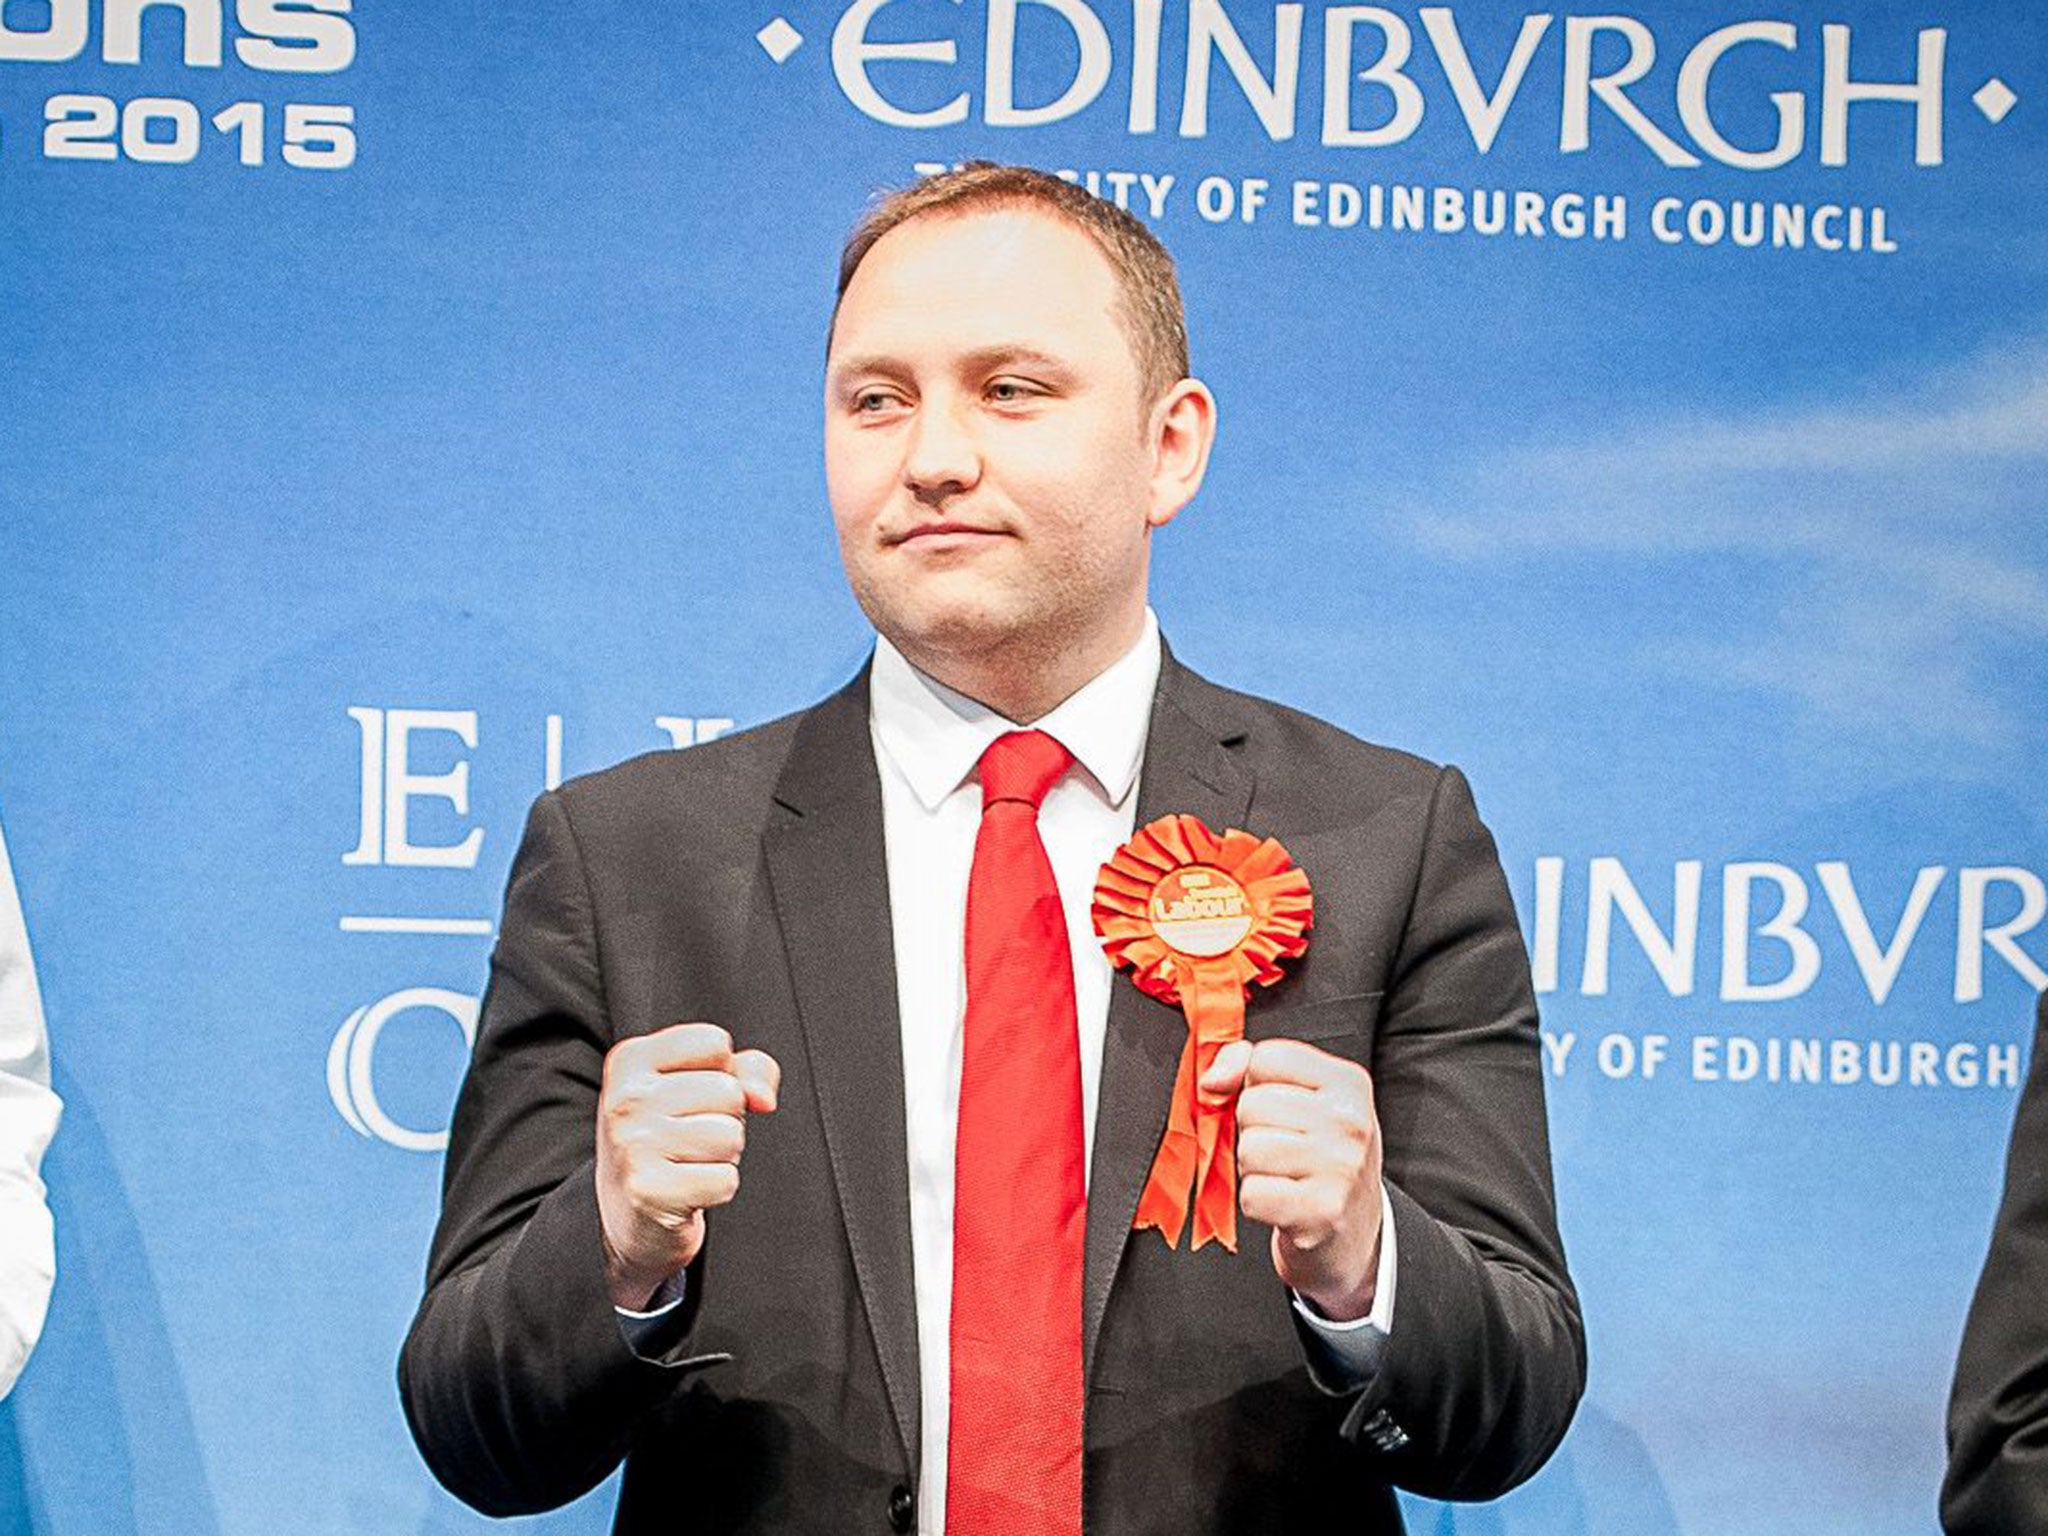 Ian Murray, MP for Edinburgh South